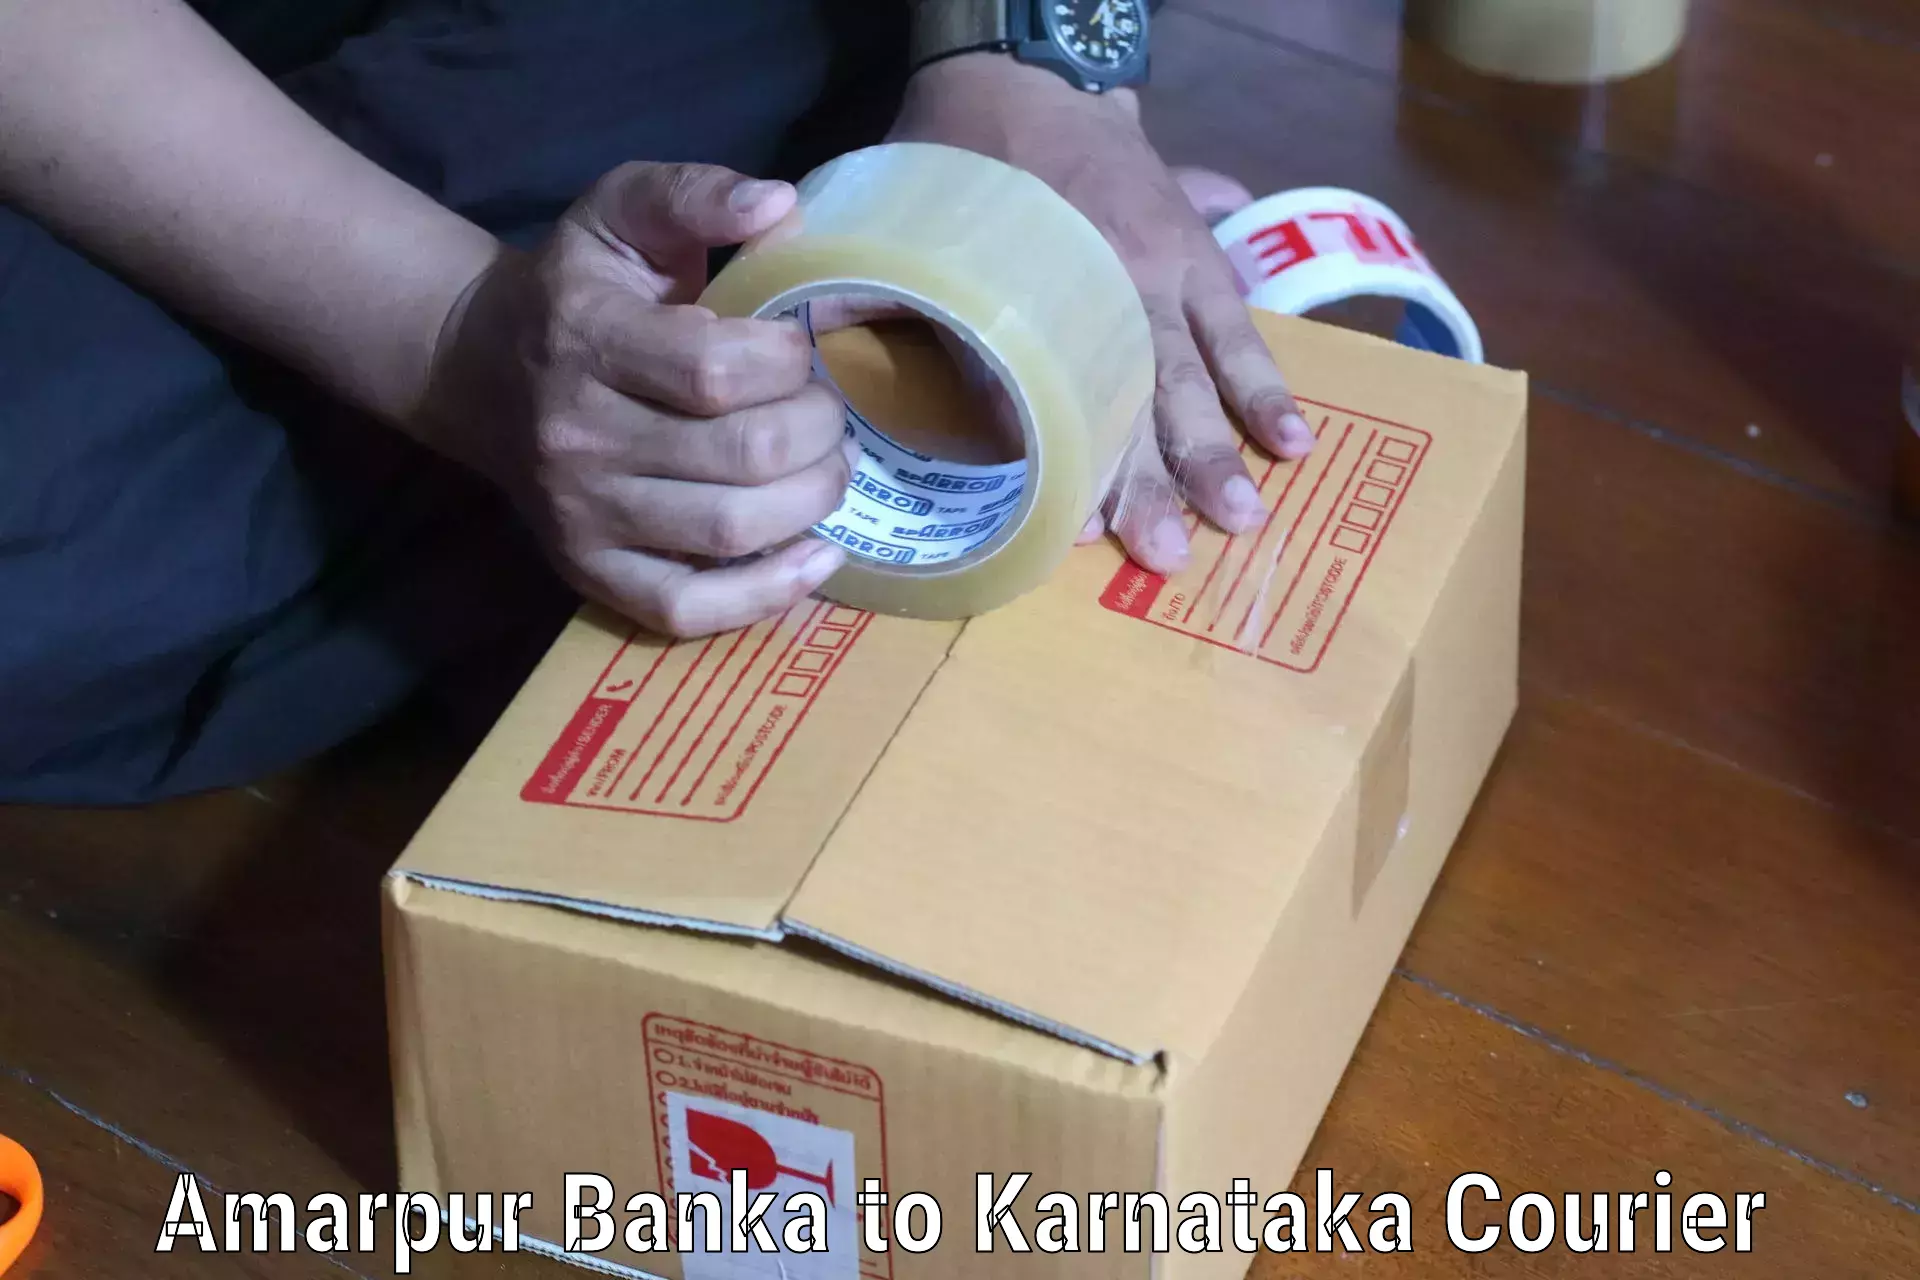 Global delivery options Amarpur Banka to Yenepoya Mangalore